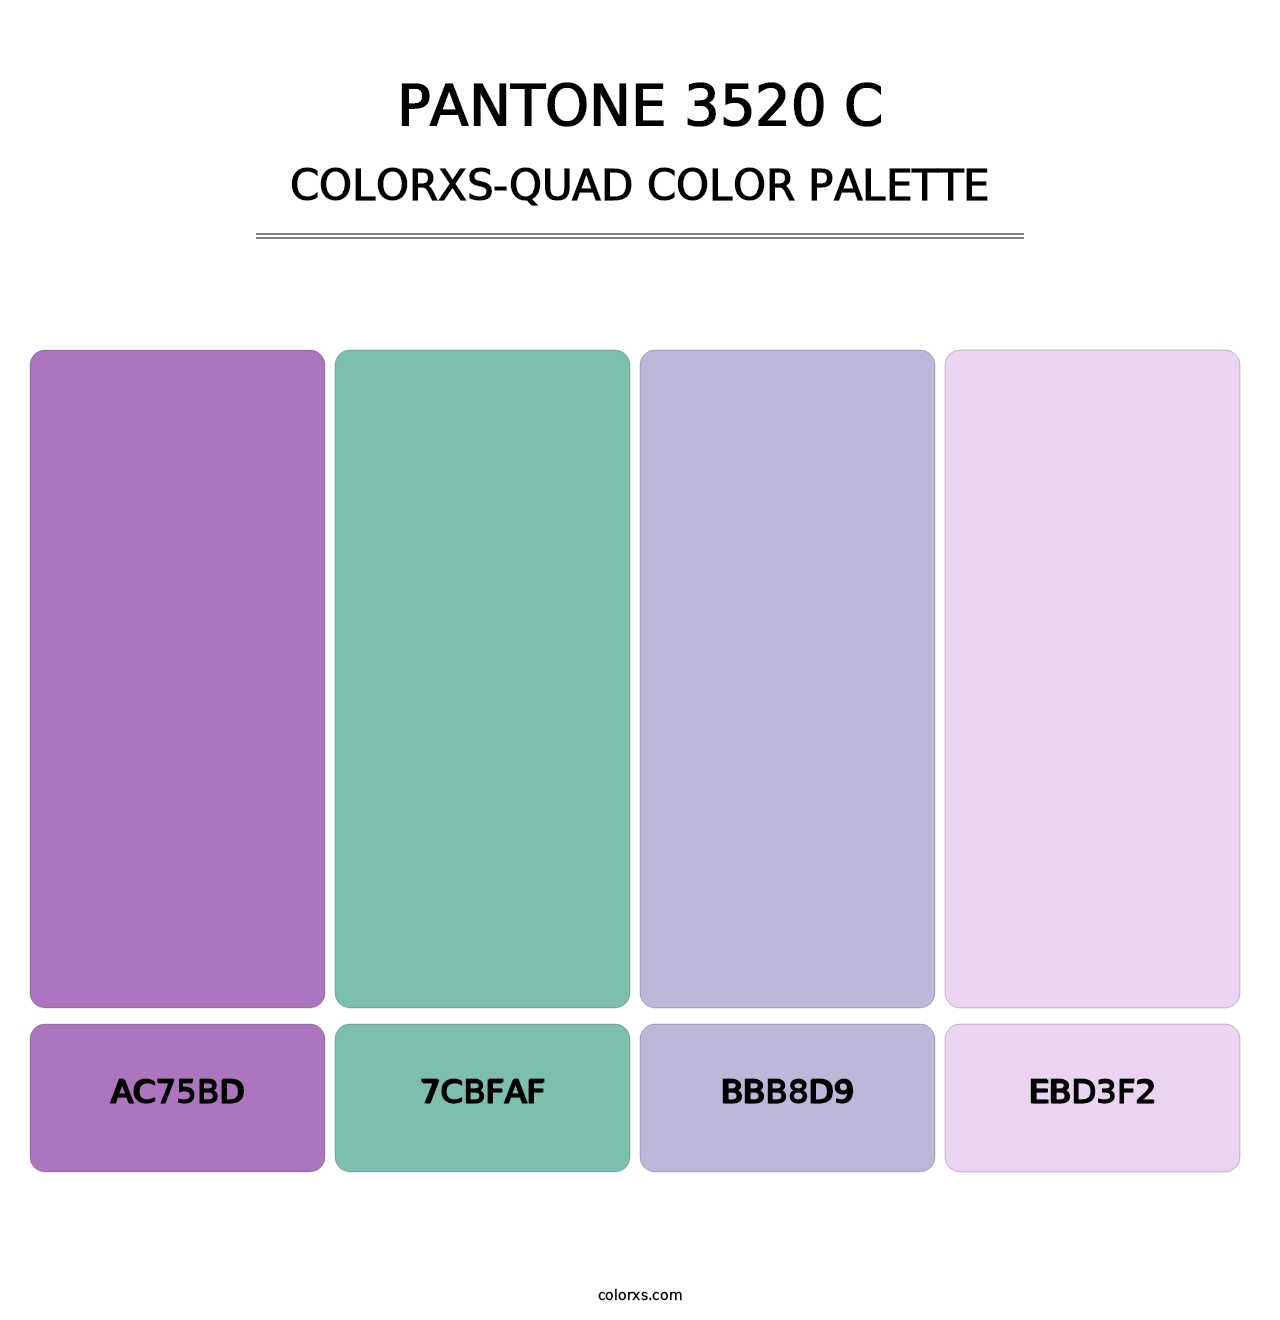 PANTONE 3520 C - Colorxs Quad Palette